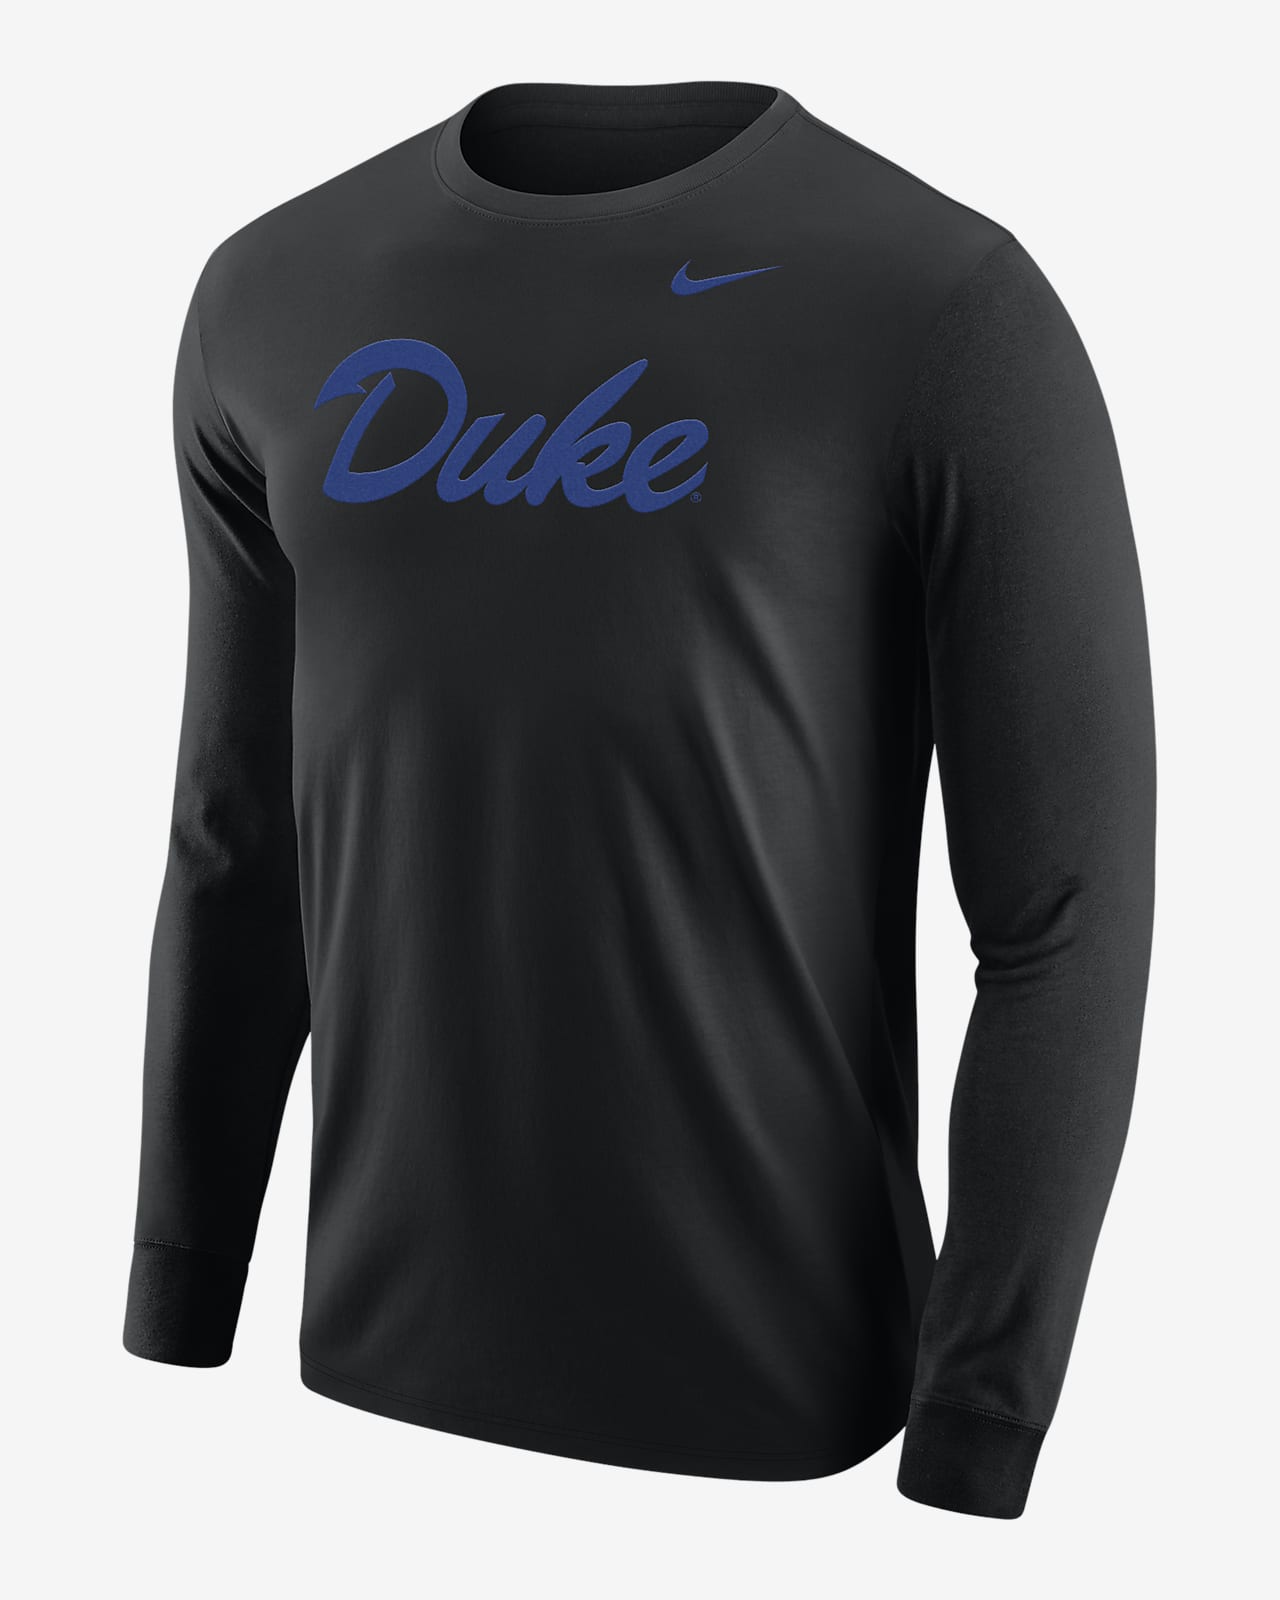 Duke Men's Nike College Long-Sleeve T-Shirt